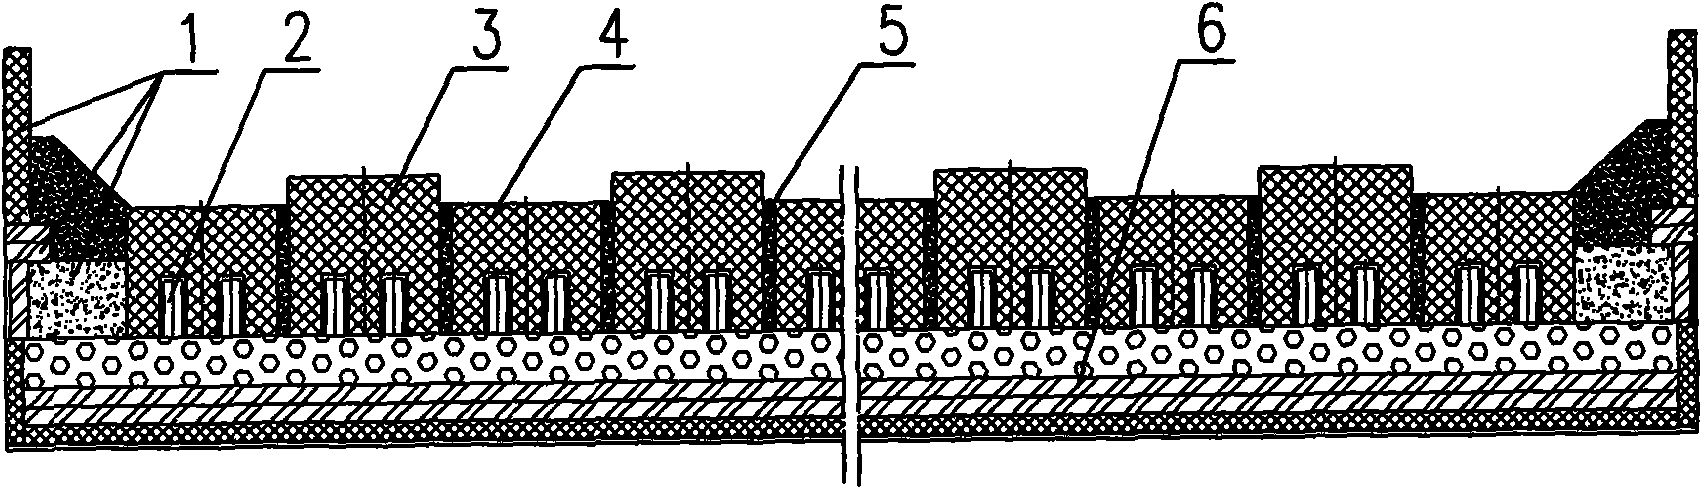 Cathode structure of aluminium cell